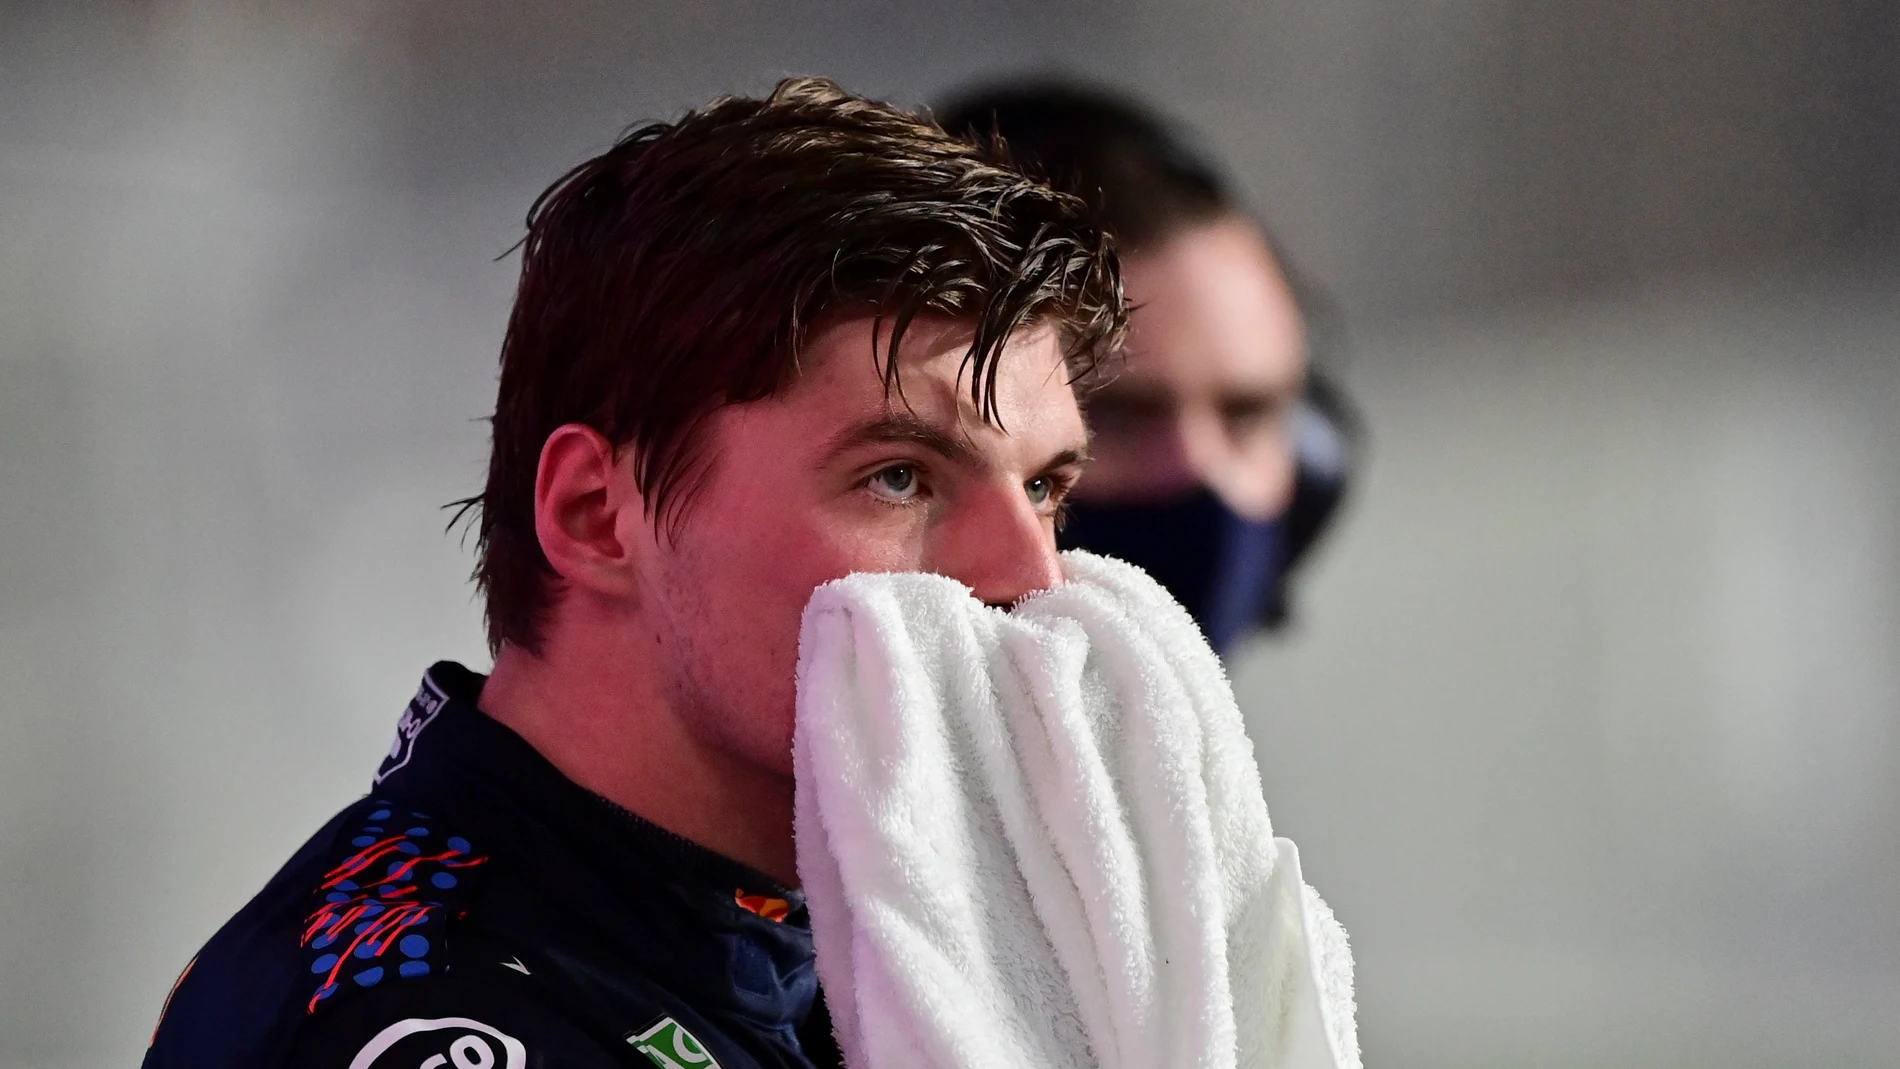 El piloto neerlandés Max Verstappen tras una sanción de la FIA